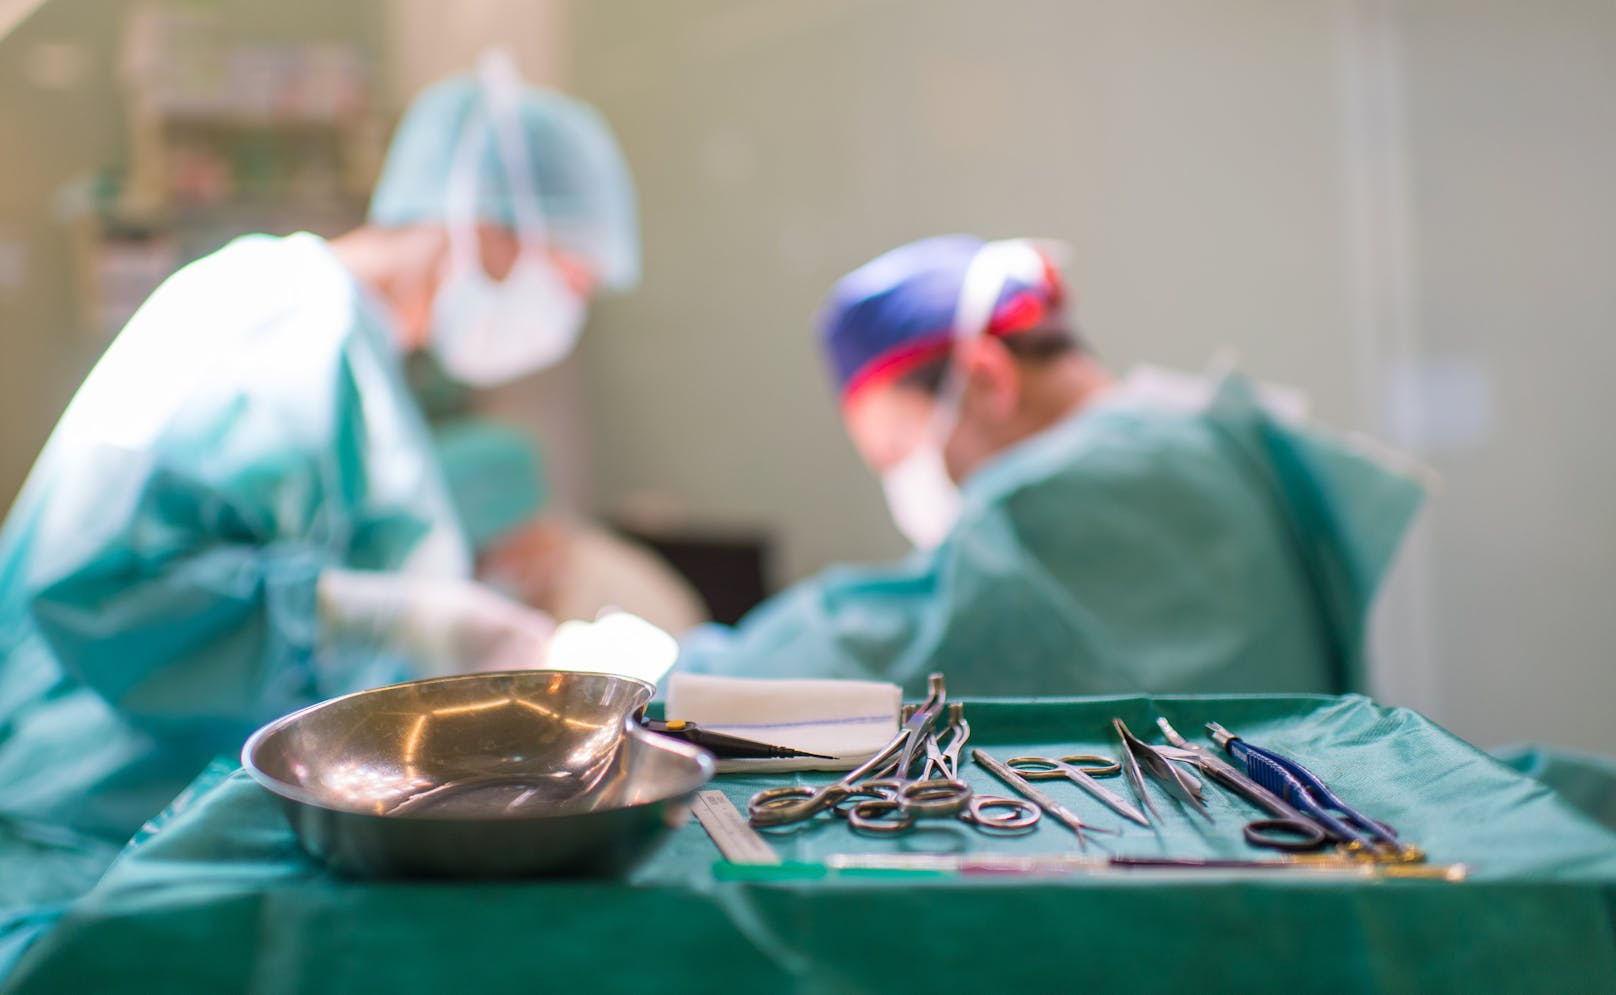 Herzbeutel durchbohrt: Chirurg bekommt 14.000 € Strafe